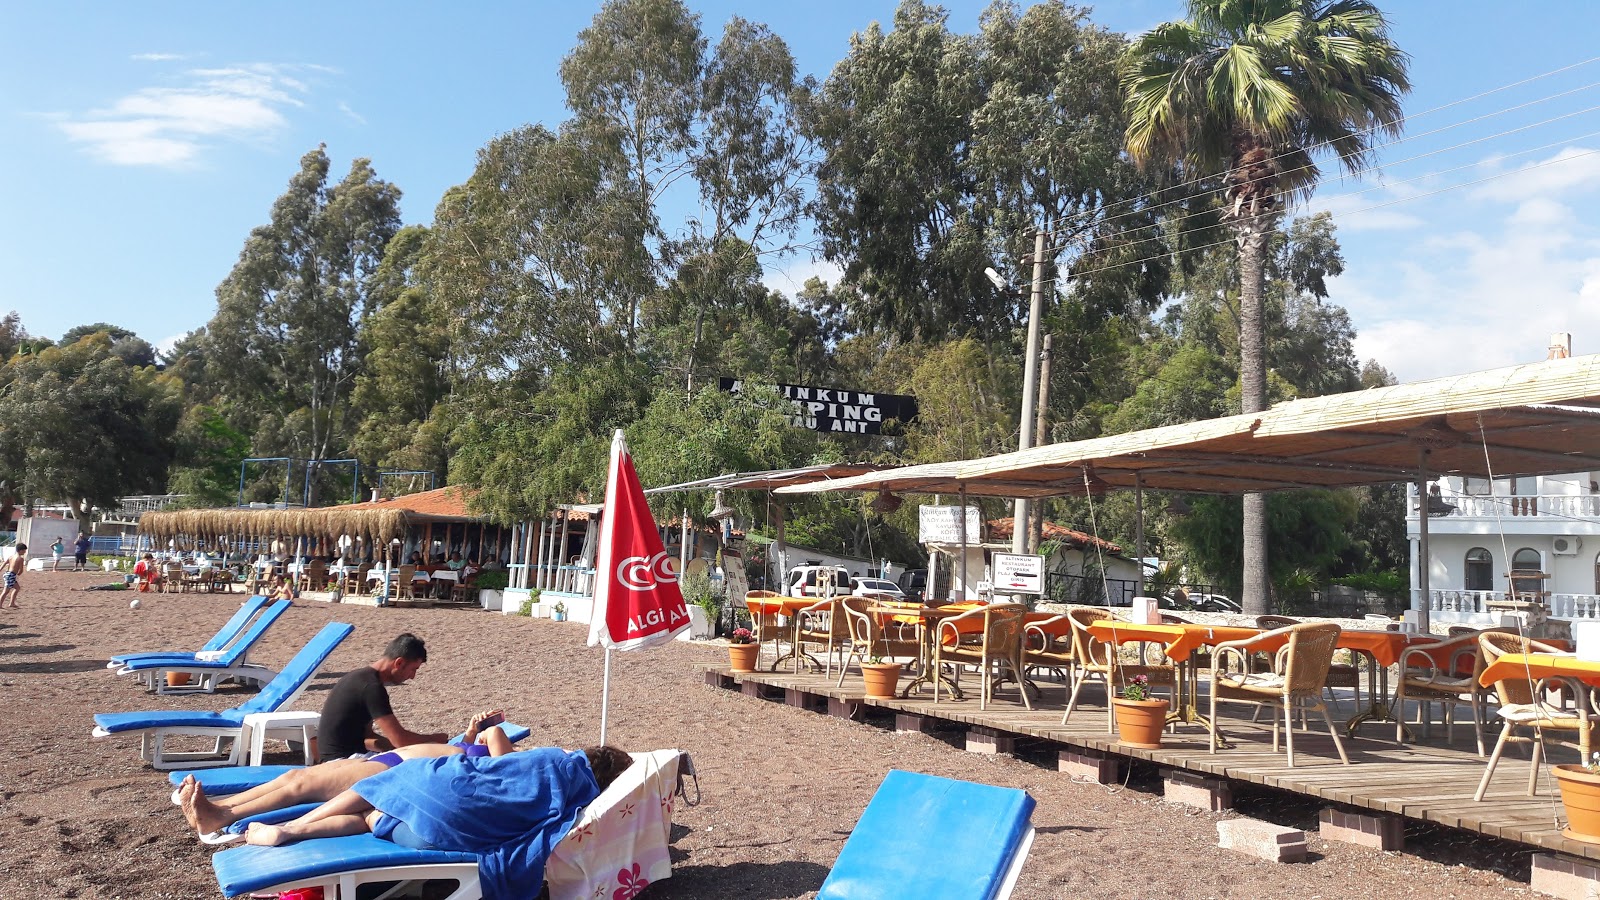 Photo de Erine beach Club - endroit populaire parmi les connaisseurs de la détente